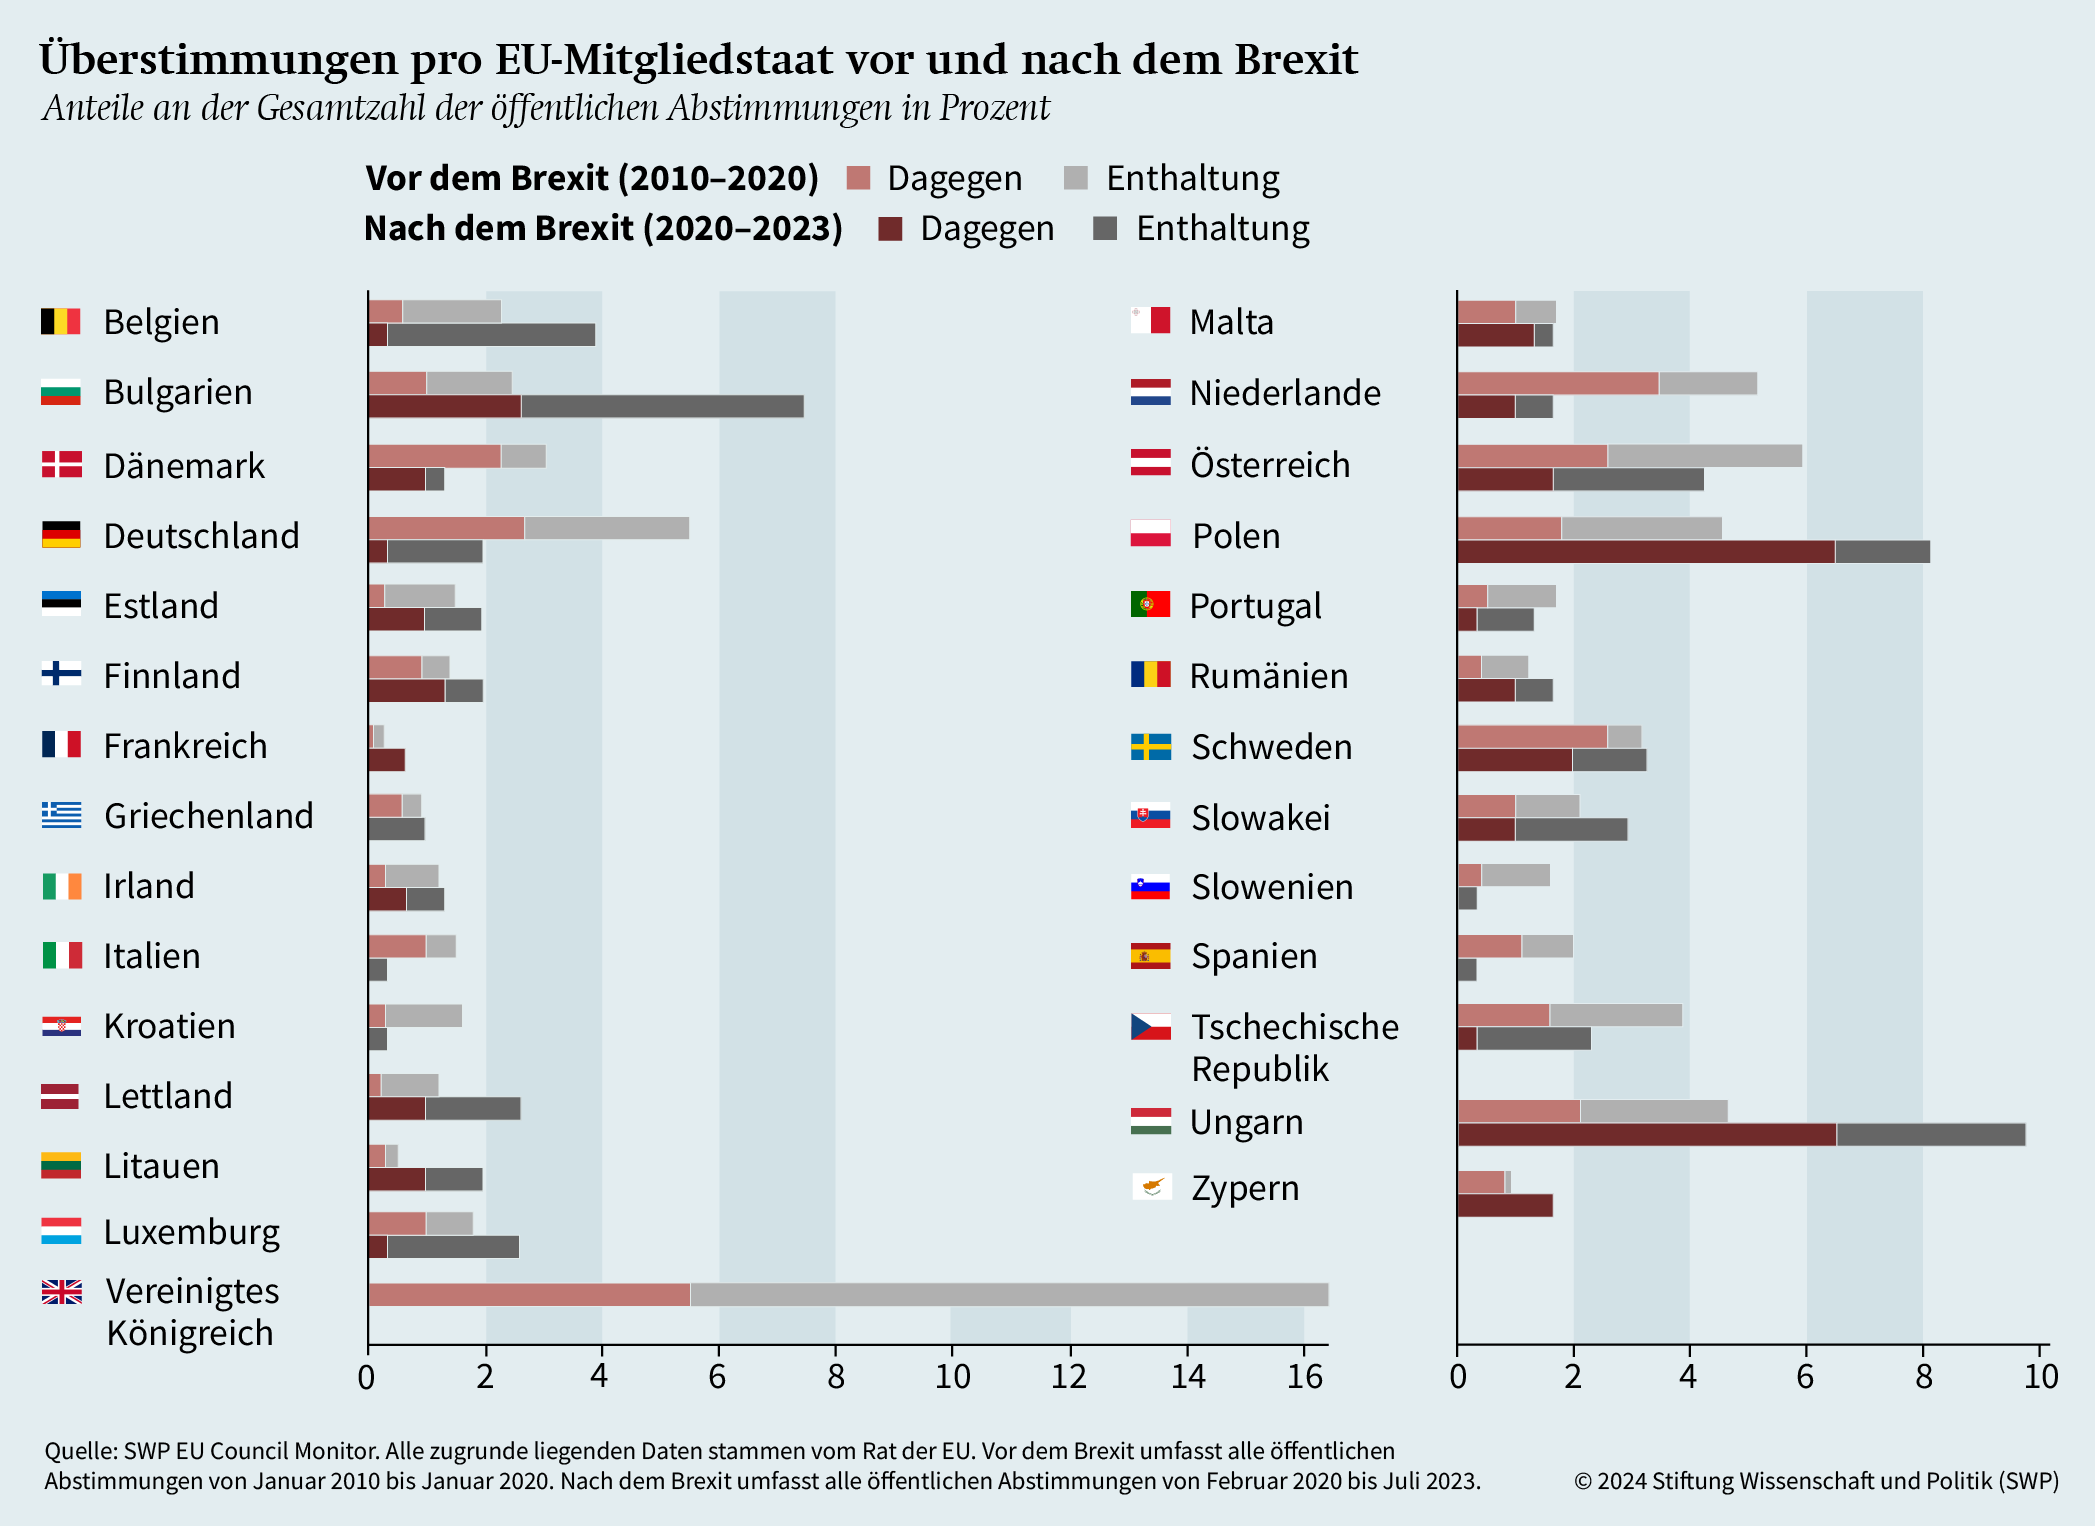 Grafik 2: Überstimmungen pro EU-Mitgliedstaat vor und nach dem Brexit